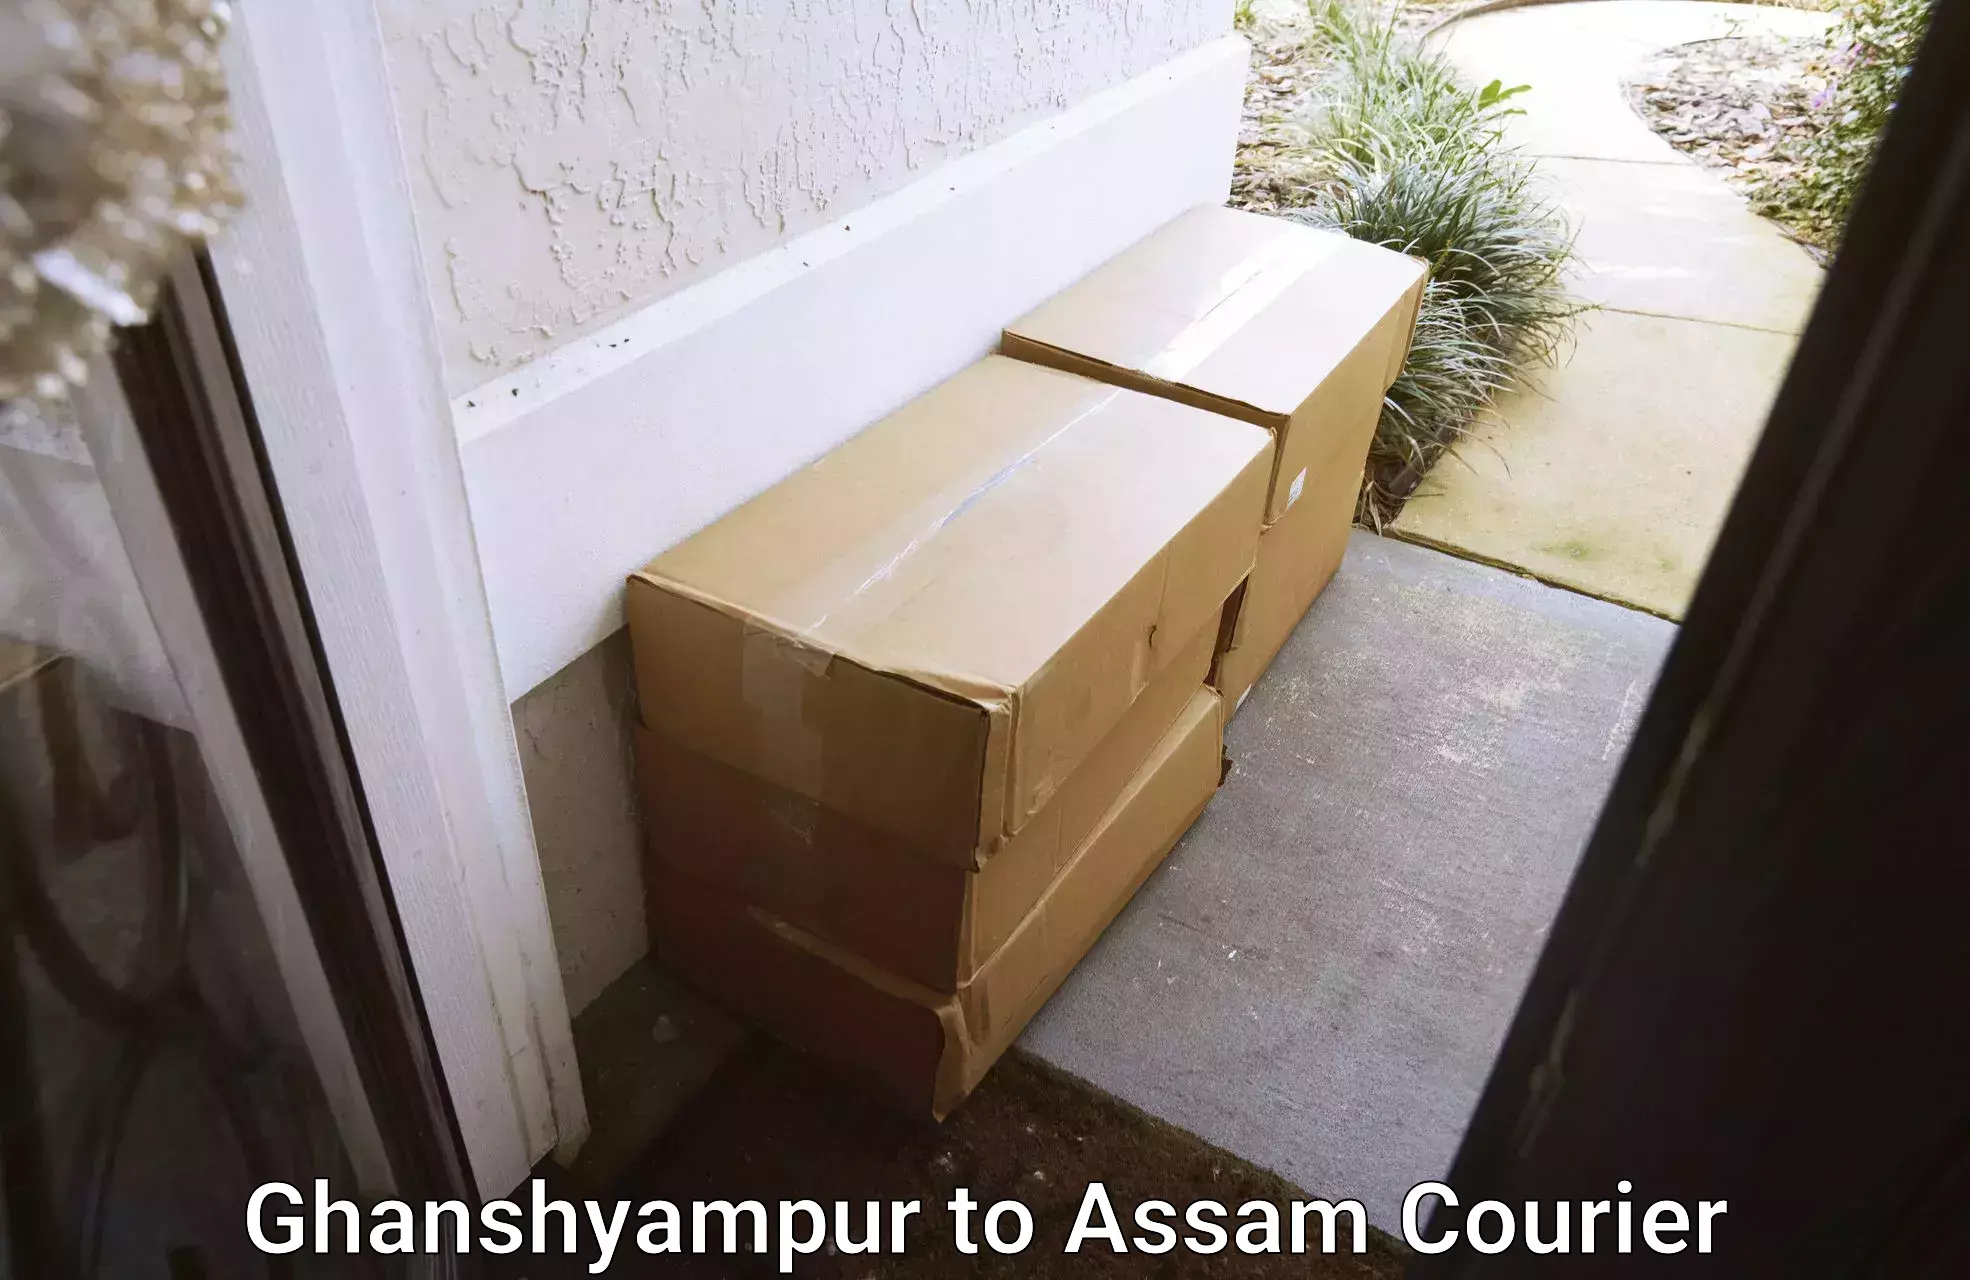 Full-service household moving Ghanshyampur to Assam